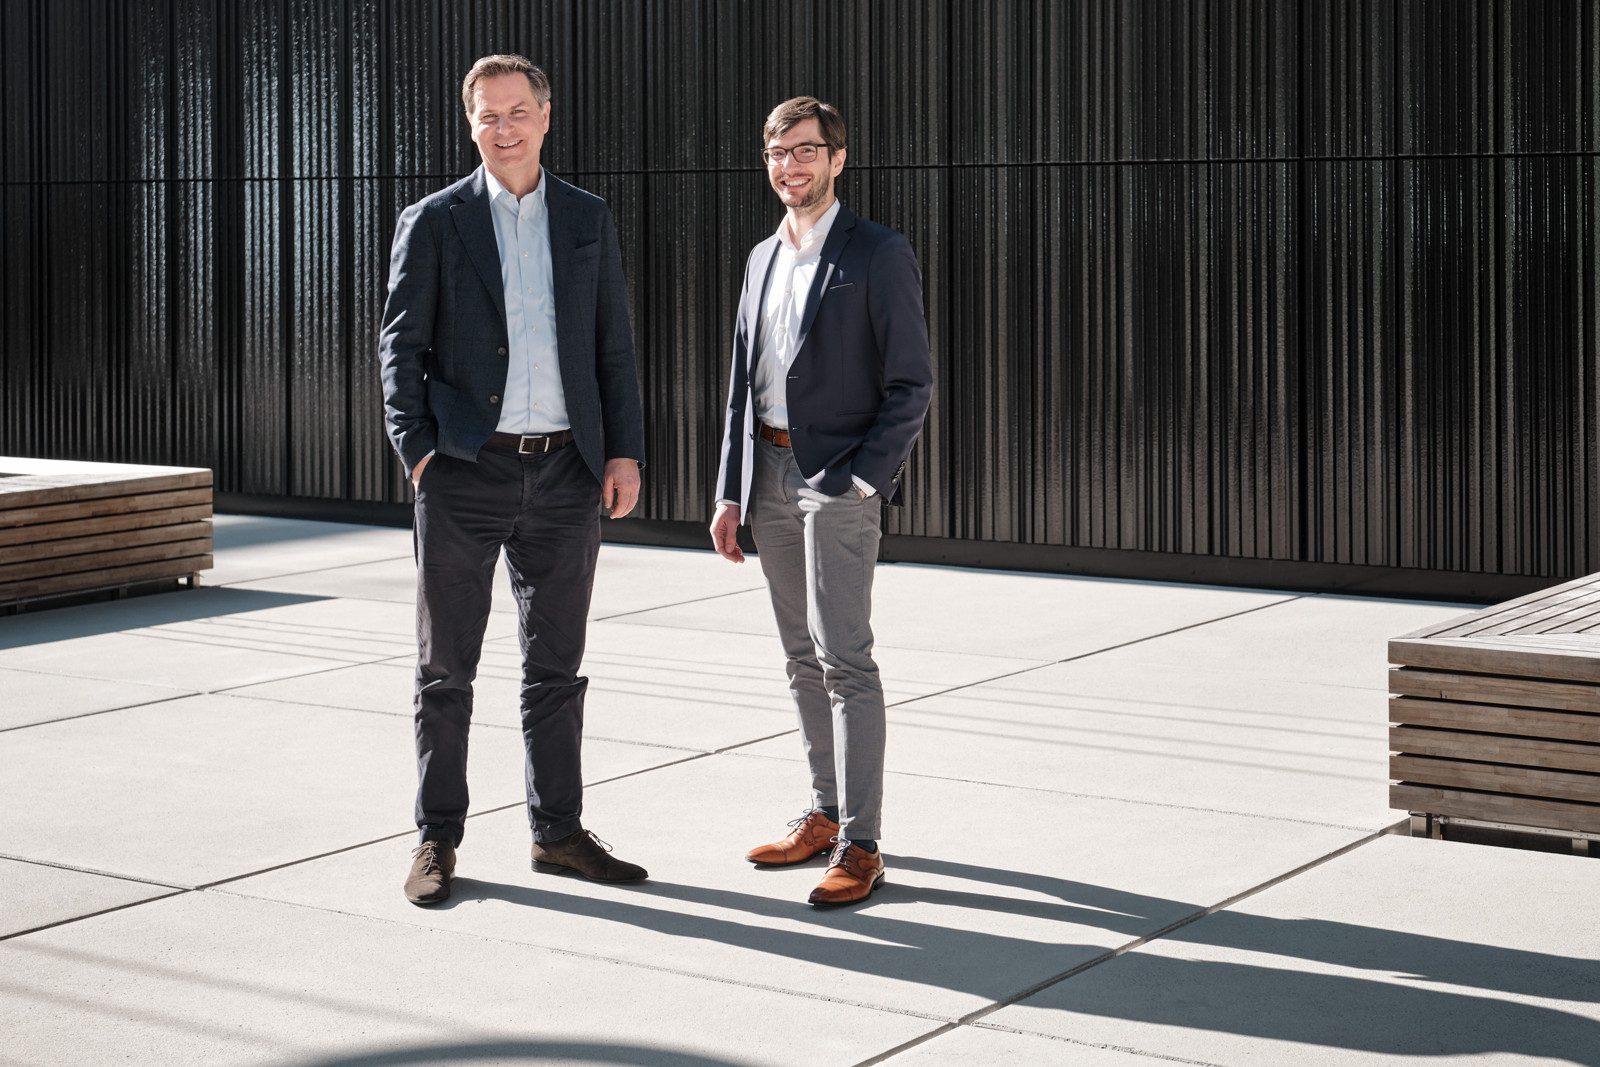 Führen seit 1. August 2022 gemeinsam die Geschäfte: Alexander Wiedenbach (l.) und Stefan Rosengarten